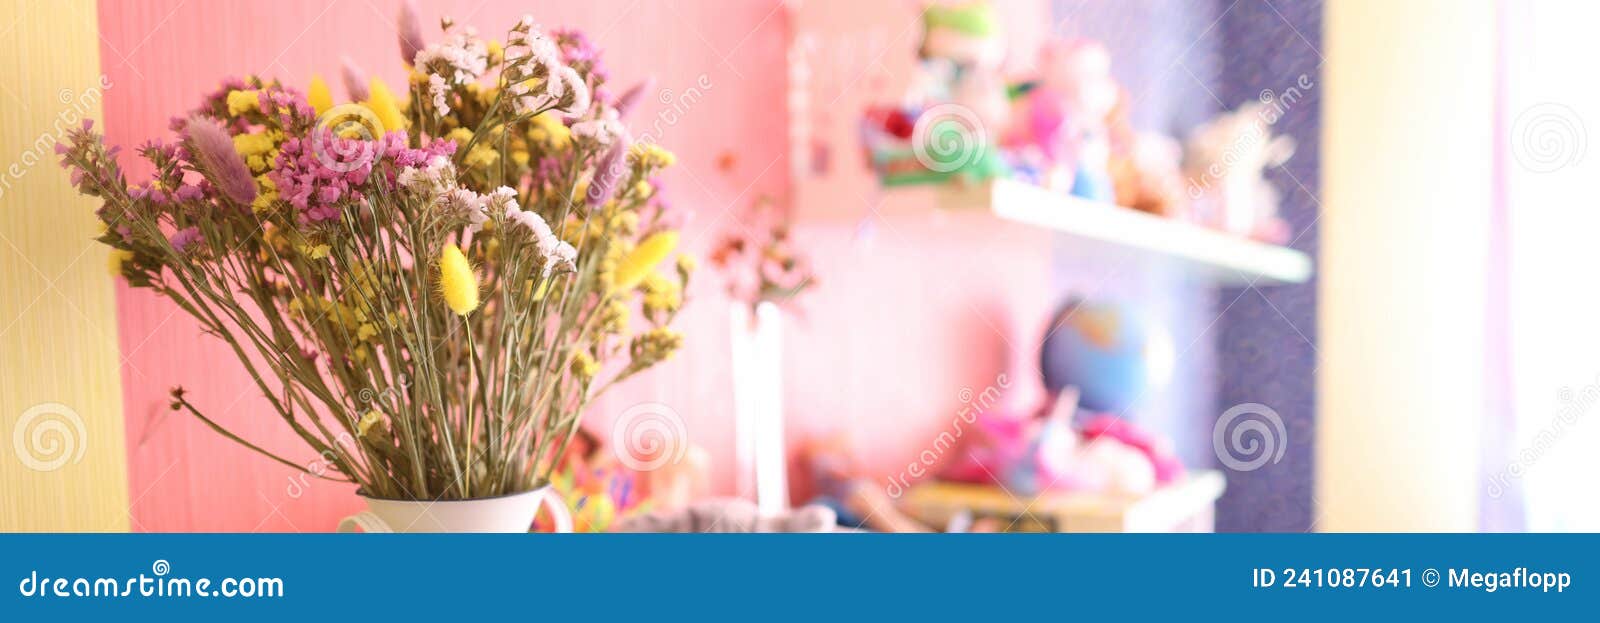 Flores Secas Para La Decoración Están En Jarrón En El Armario De La  Habitación Para Los Niños Imagen de archivo - Imagen de secado, rosa:  241087641